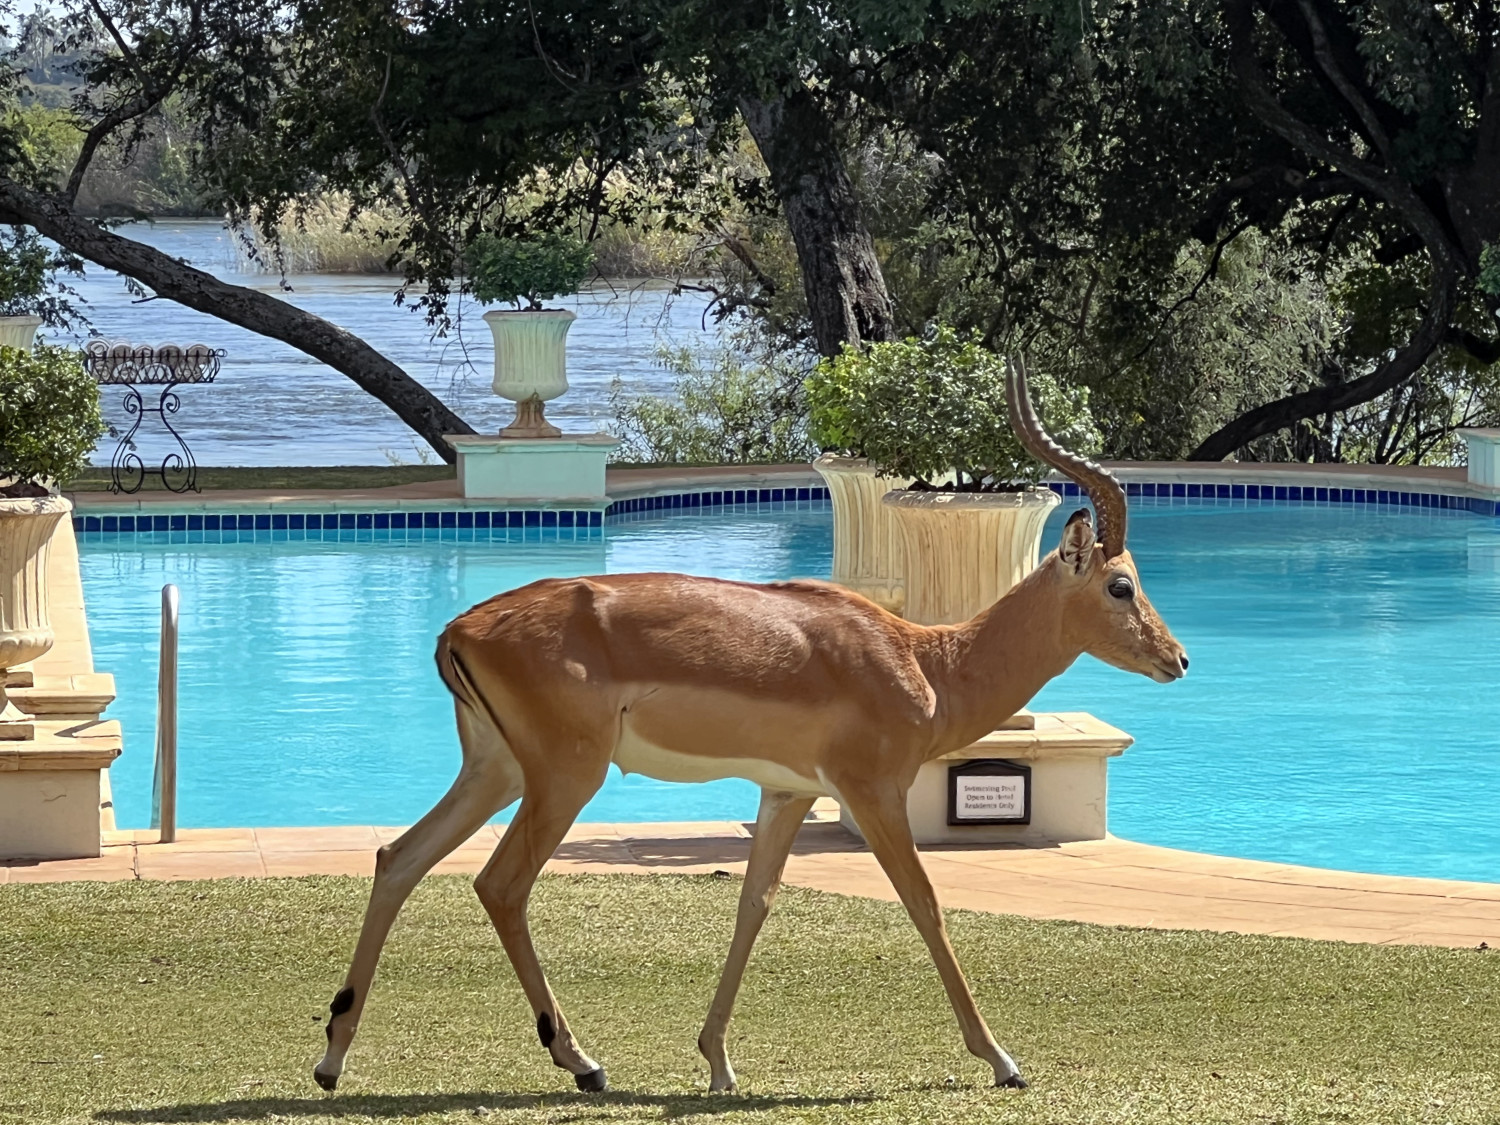 Impala at the Pool